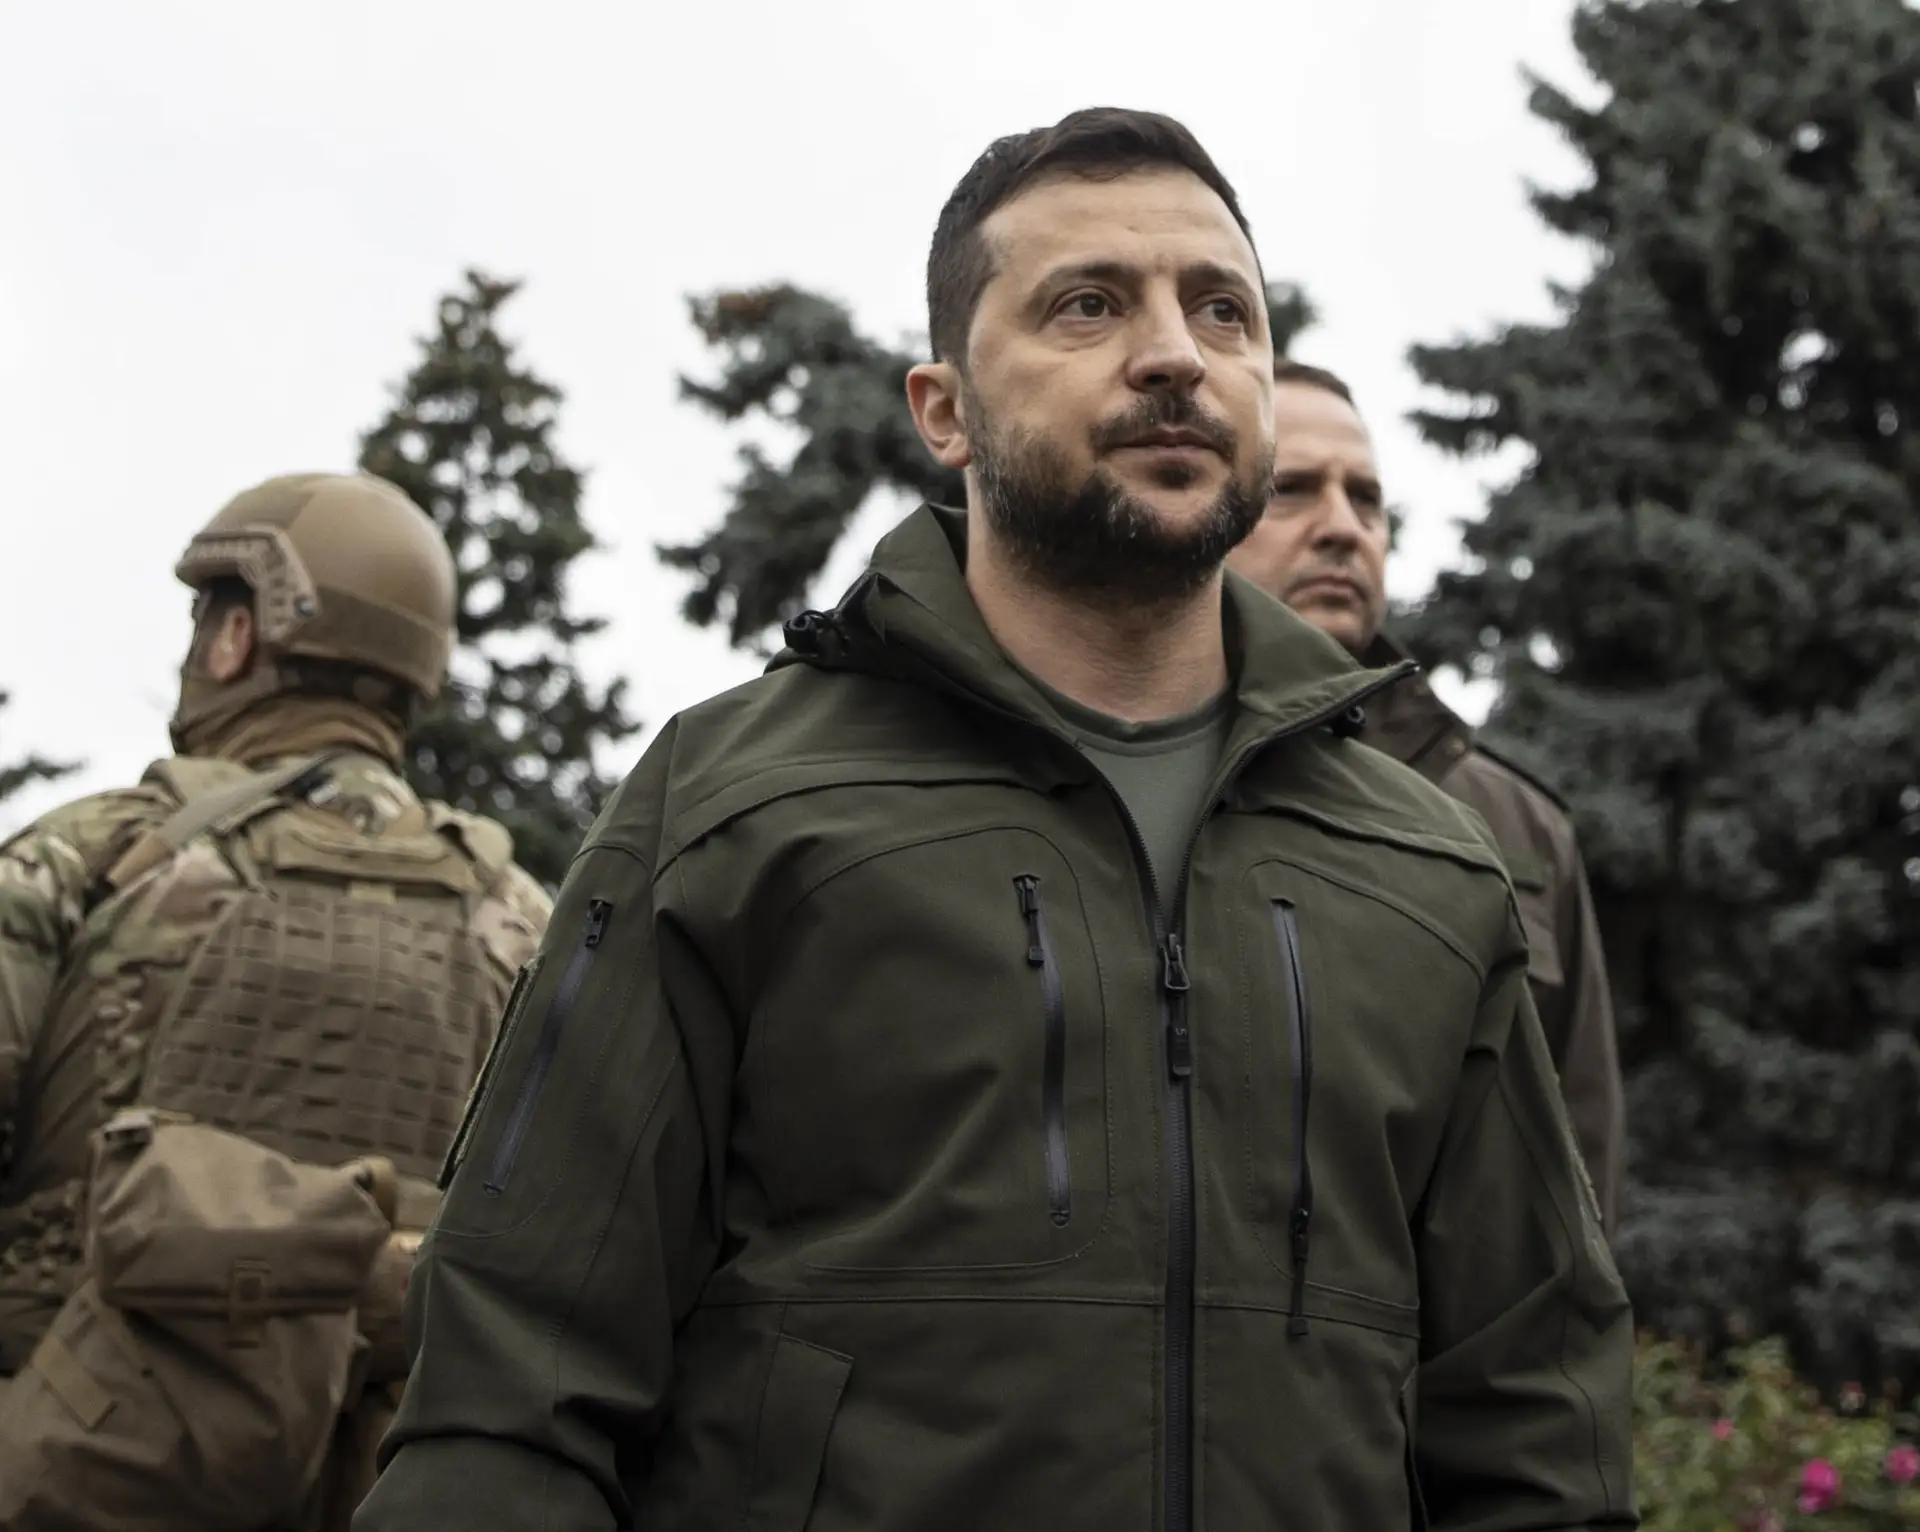 Zelensky afirma que "defensores" ucranianos controlam "linha da frente"